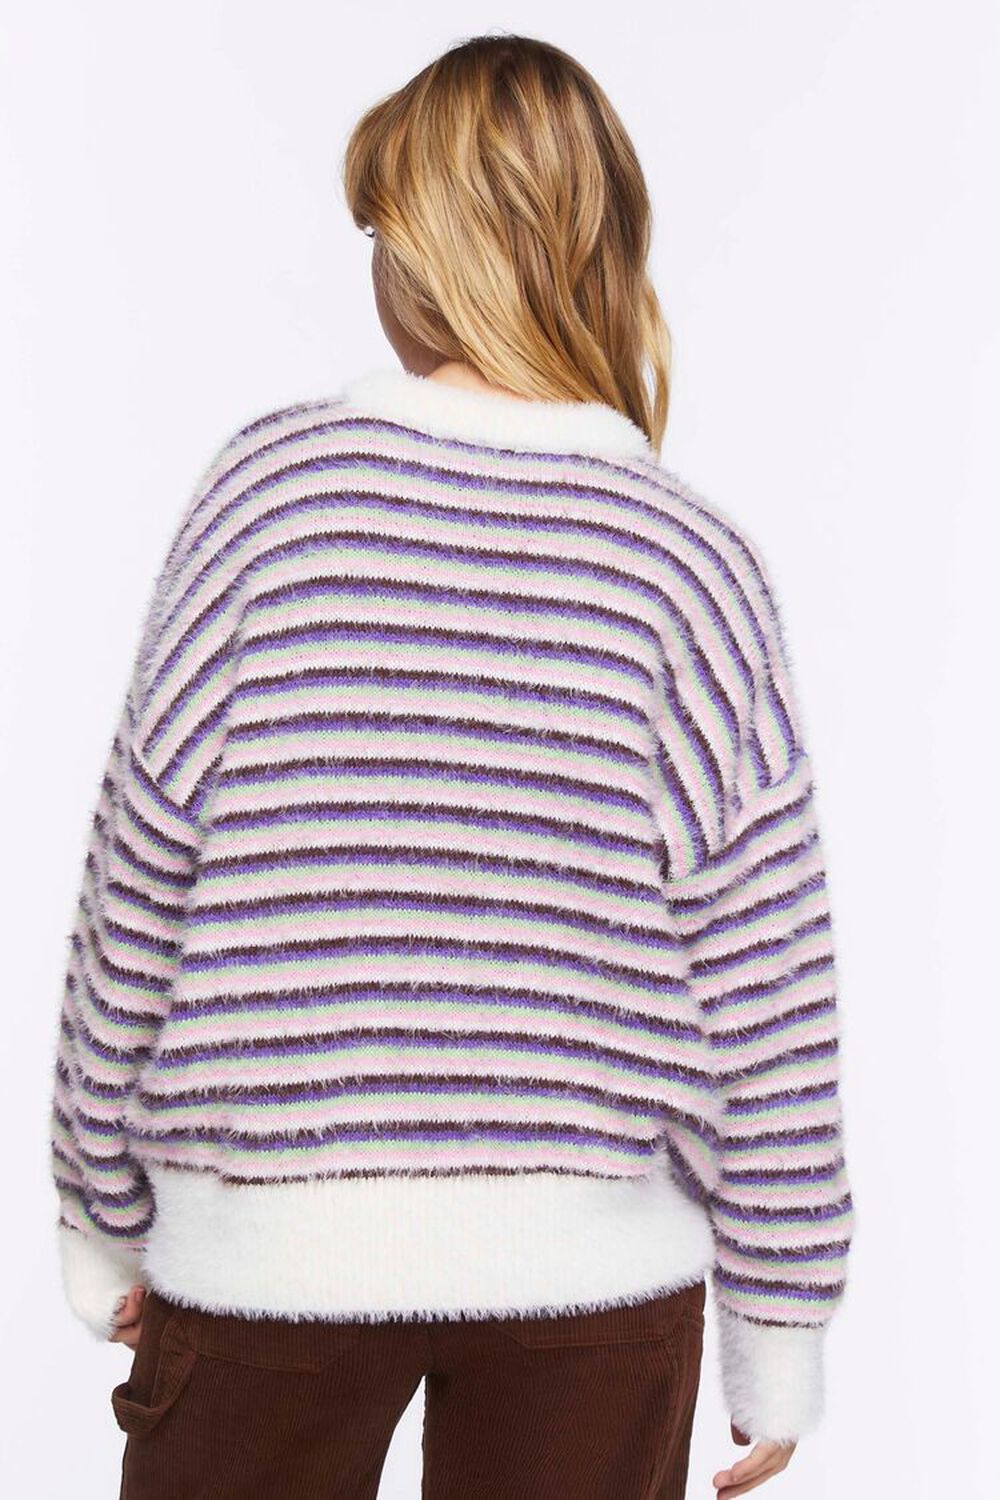 VANILLA/MULTI Fuzzy Striped Floral Graphic Sweater, image 3